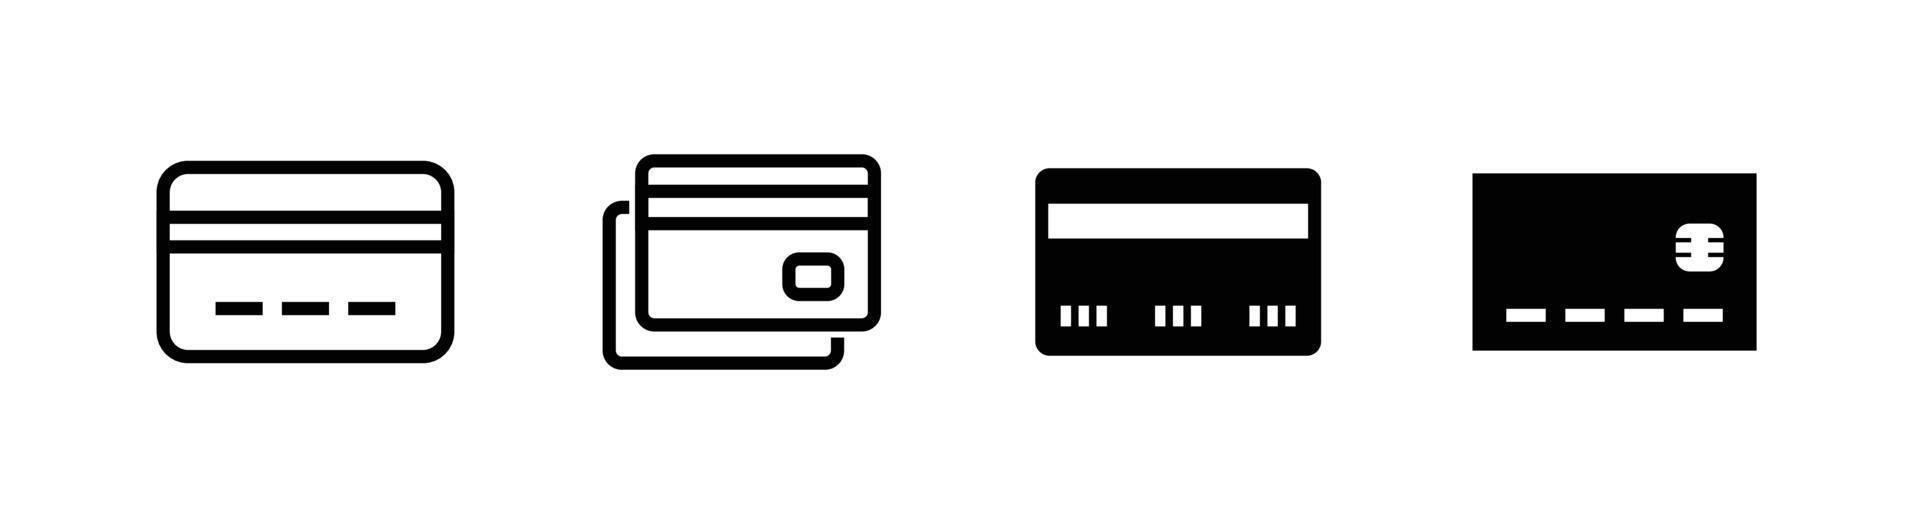 elemento de diseño de icono de tarjeta, conjunto de iconos de imágenes prediseñadas relacionado con tarjeta de crédito o tarjeta de débito vector